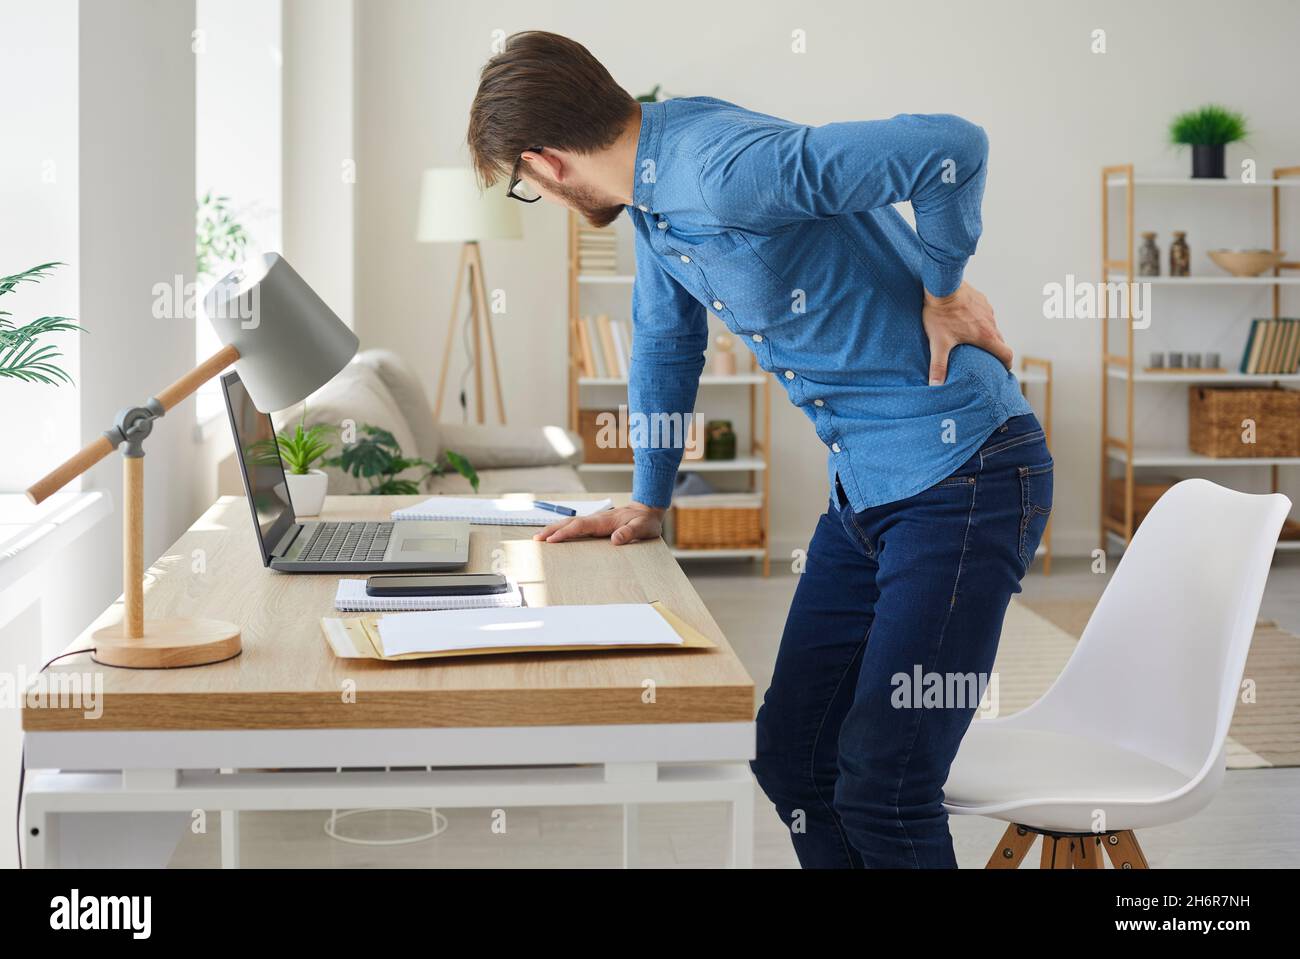 L'homme qui travaille assis devant son ordinateur tout le temps souffre de douleurs dorsales Banque D'Images